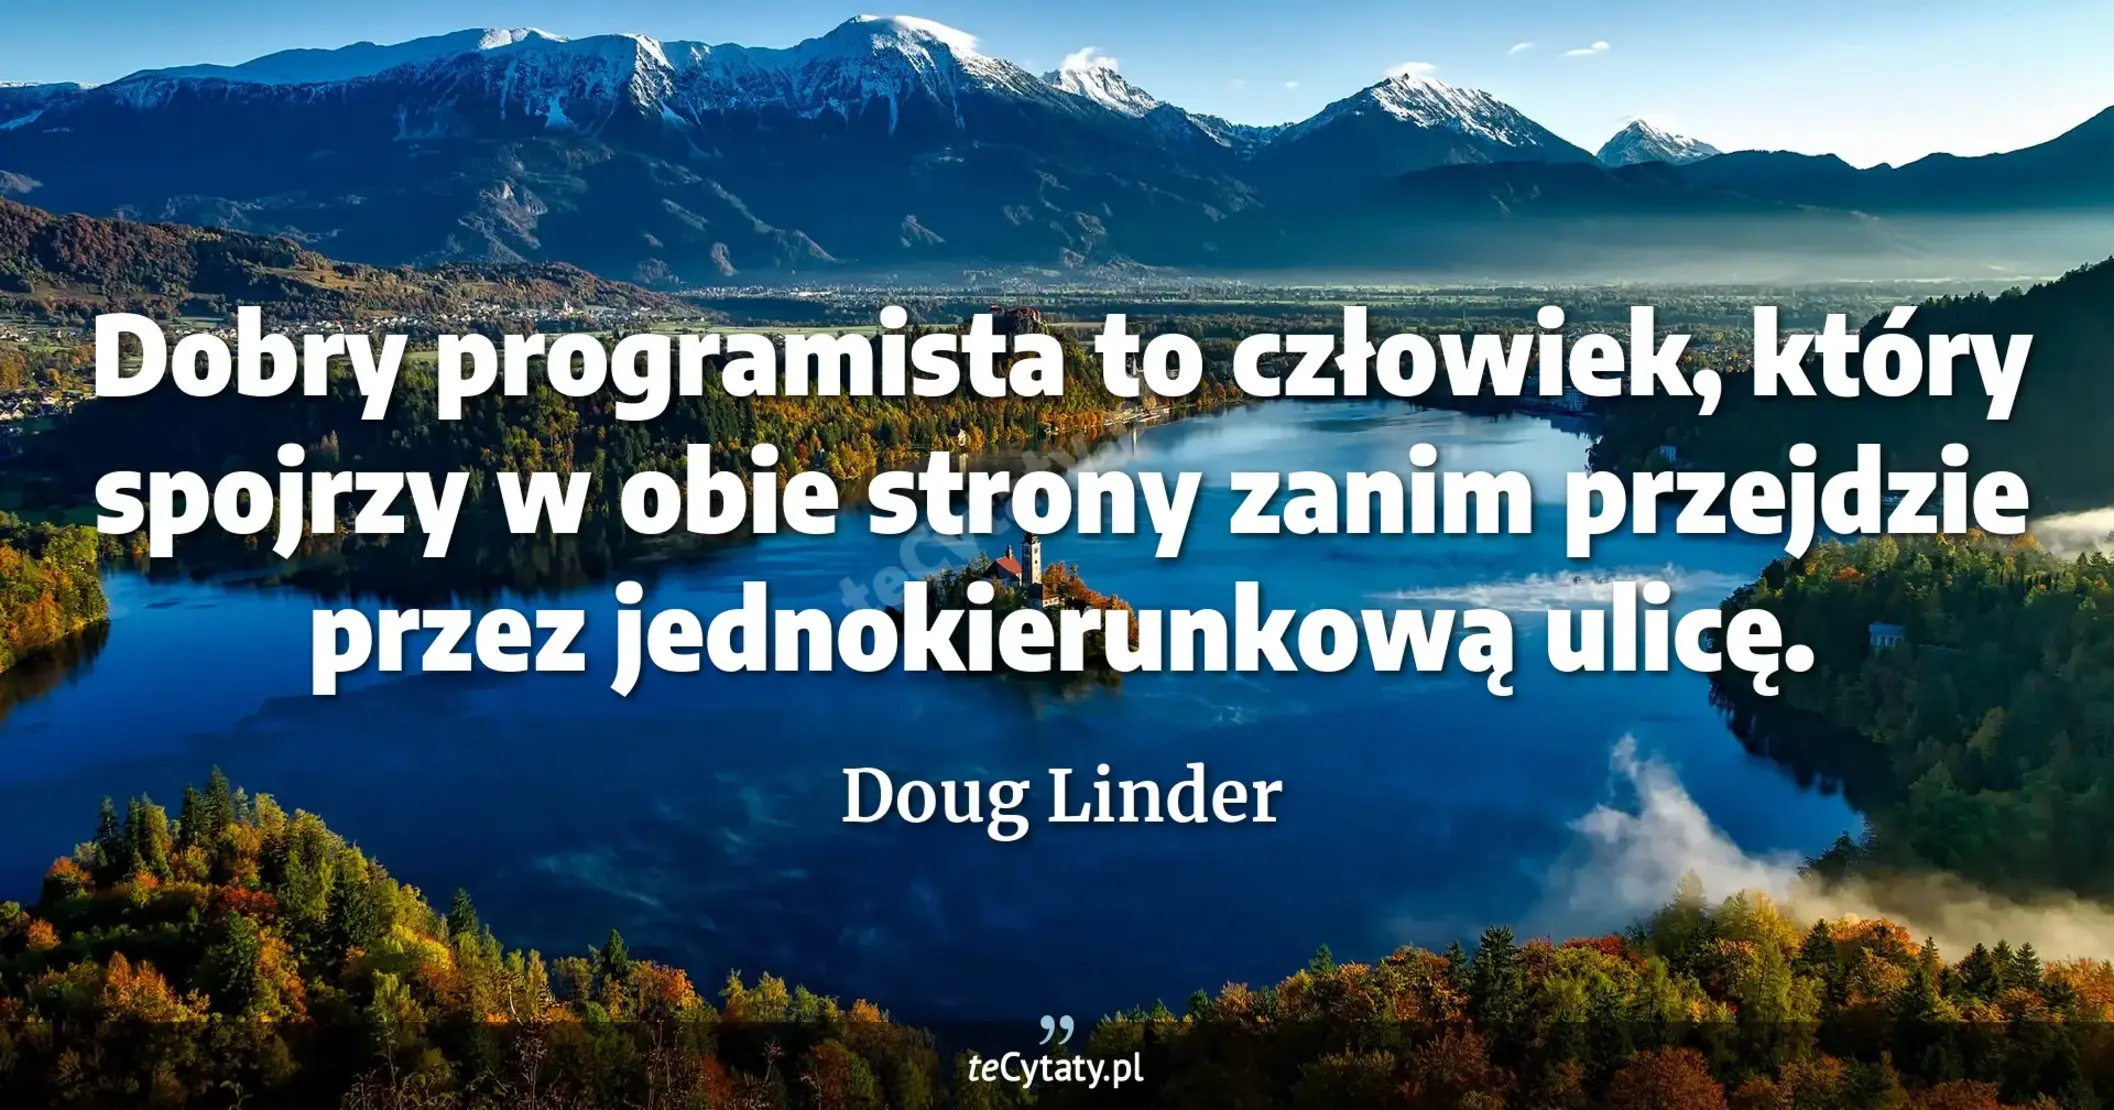 Dobry programista to człowiek, który spojrzy w obie strony zanim przejdzie przez jednokierunkową ulicę. - Doug Linder